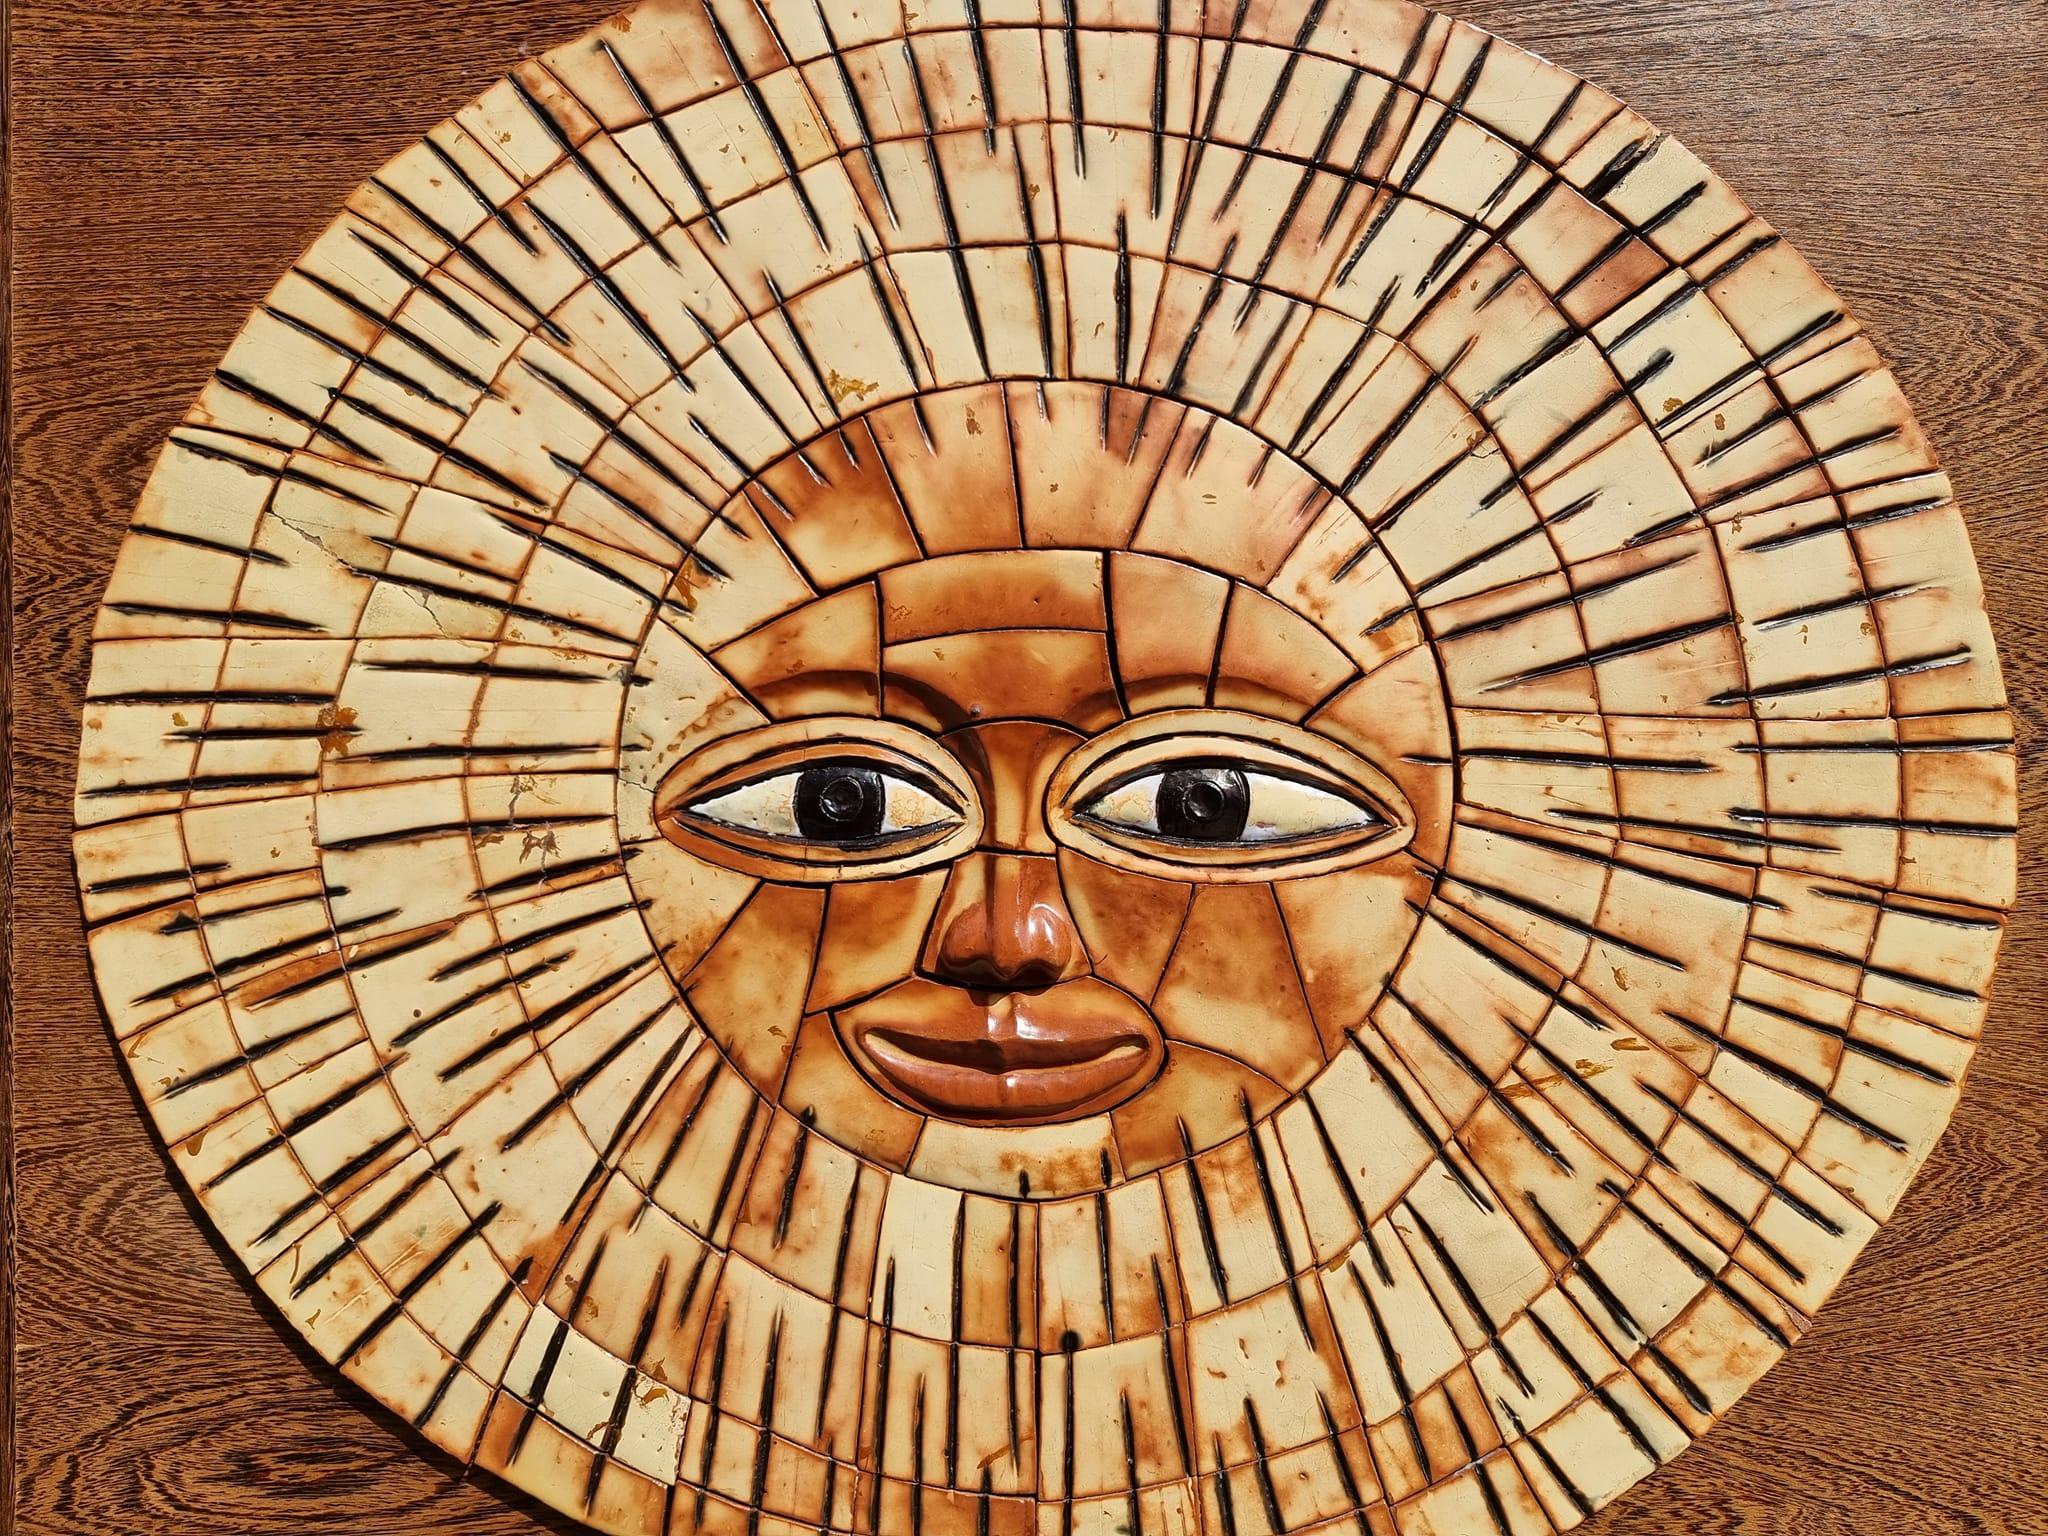 Grande sculpture murale en céramique du milieu du 20e siècle représentant un visage de soleil. Le visage de soleil en céramique est incroyablement détaillé dans des couleurs vibrantes et fera une belle addition à n'importe quelle maison.

Largeur